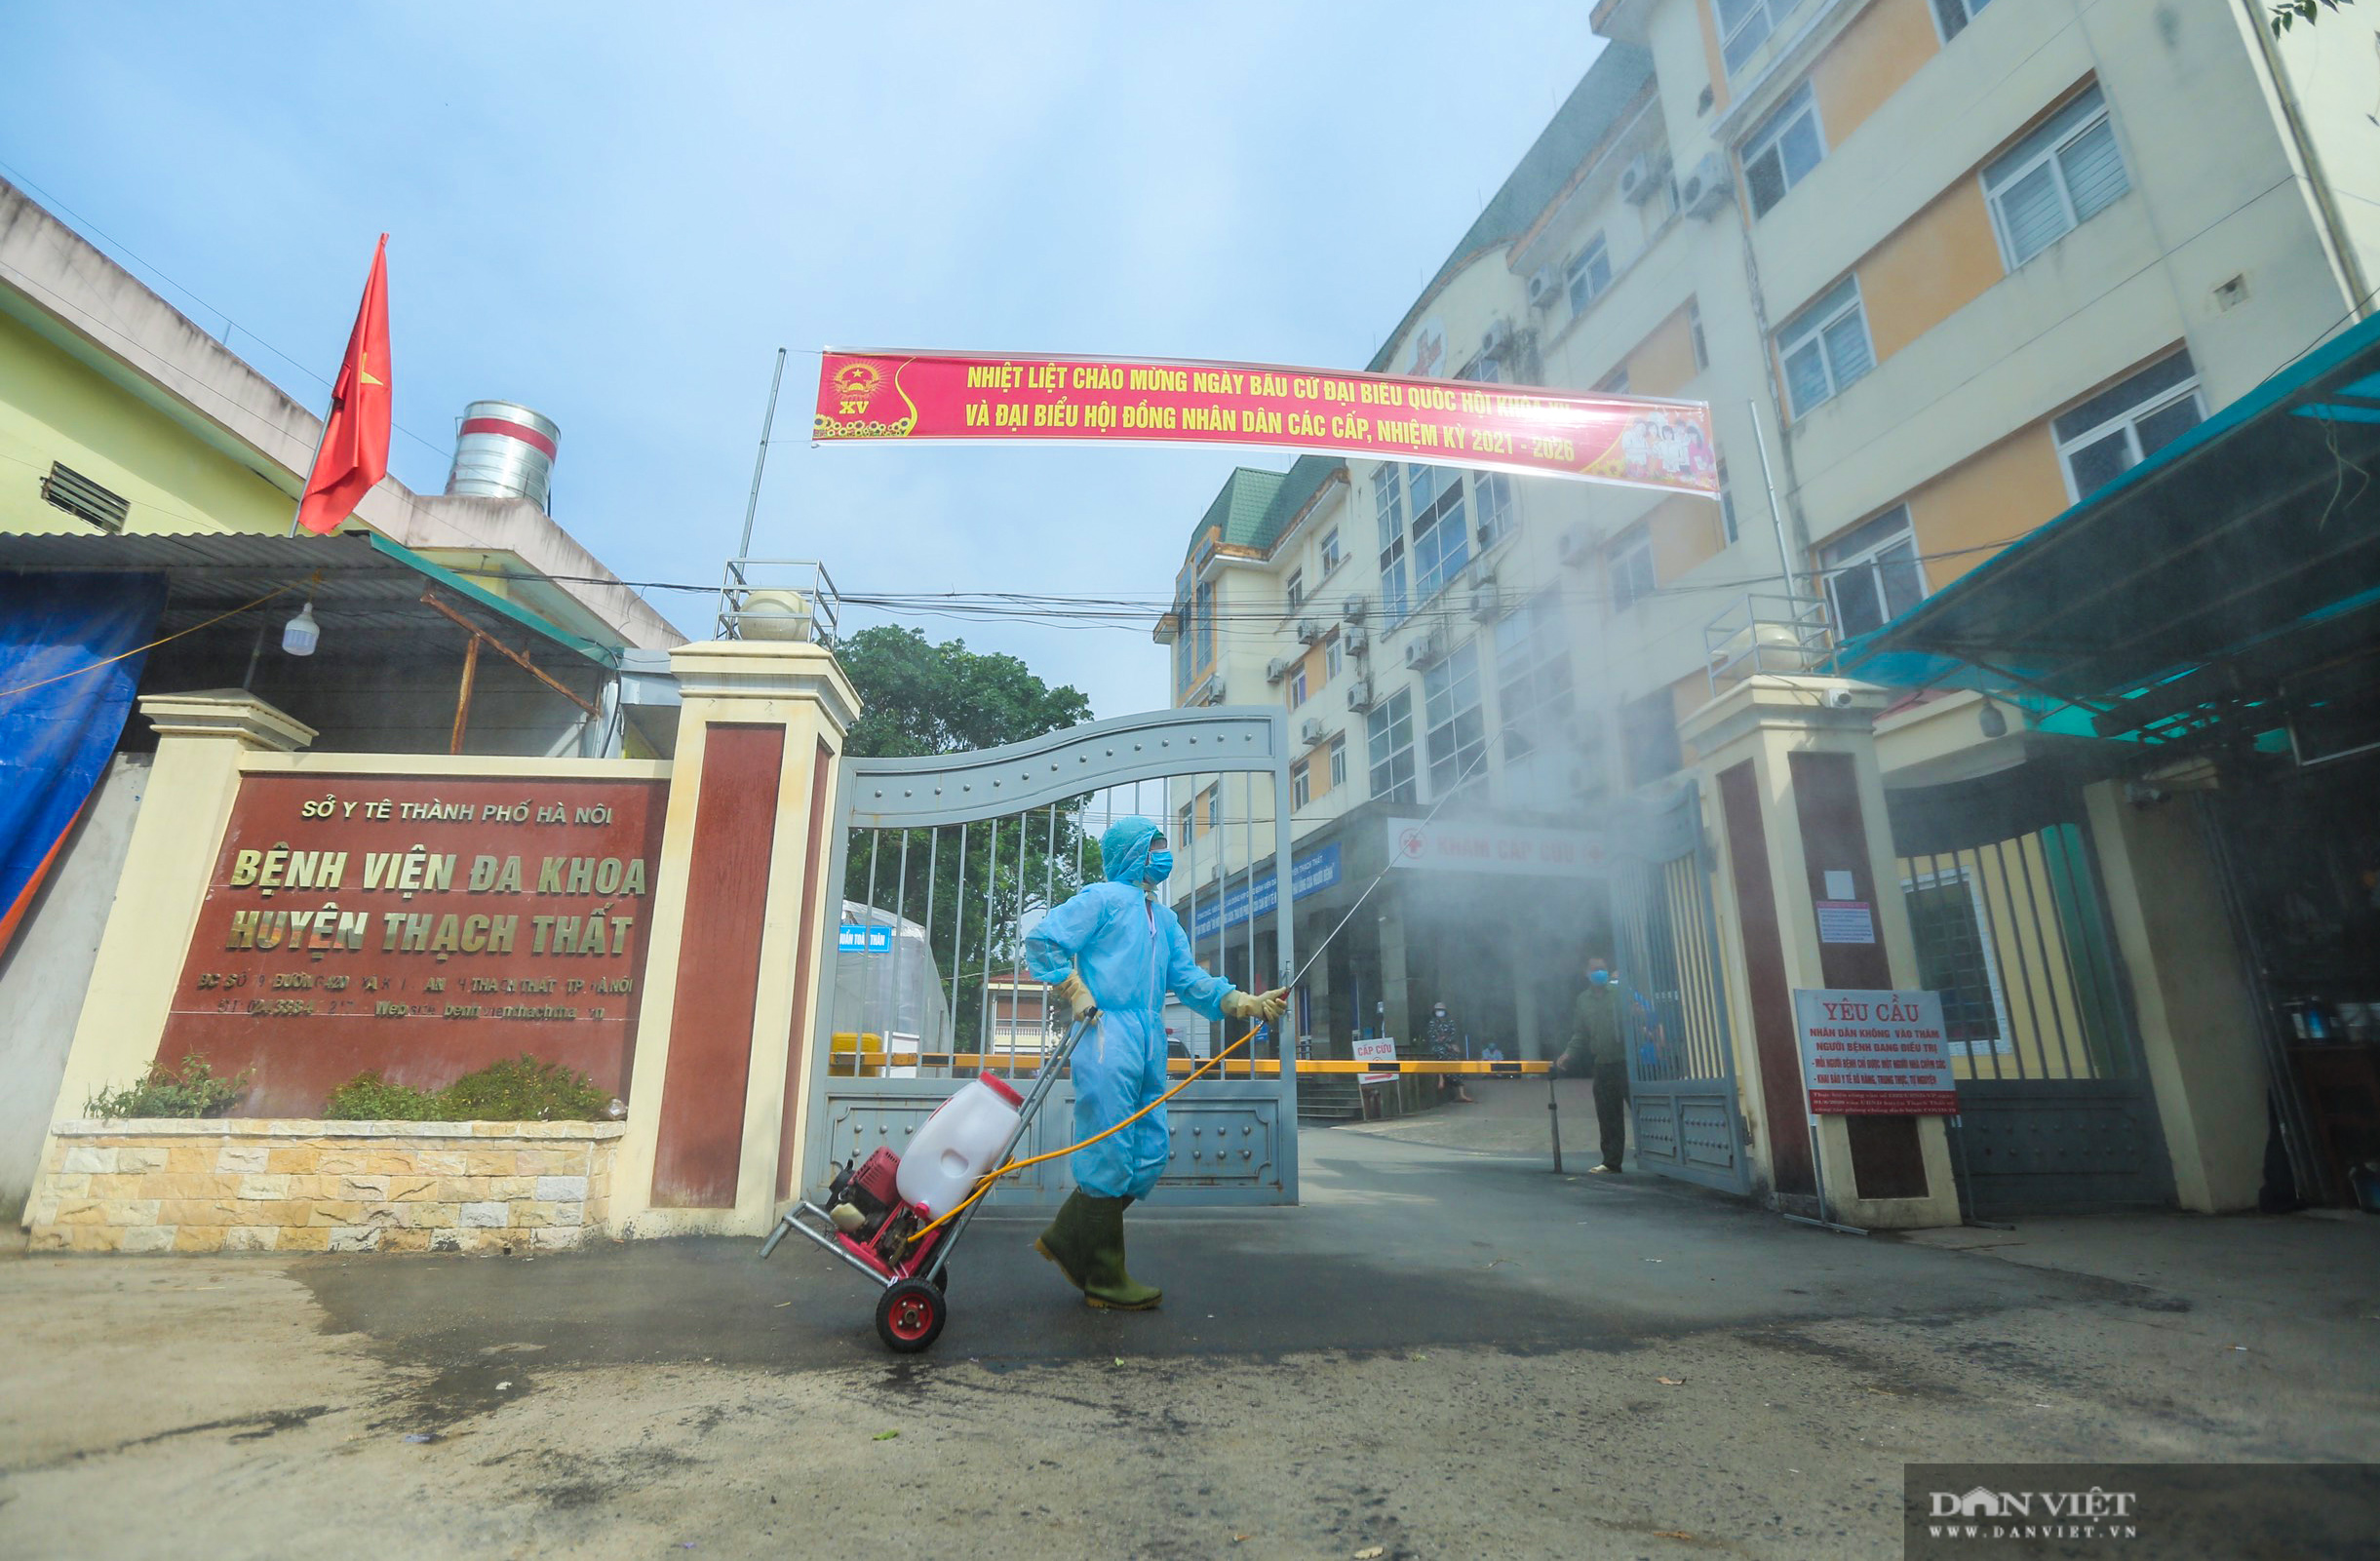 Một bệnh viện của Hà Nội ngừng tiếp bệnh nhân do có ca nhiễm Covid-19 mới - Ảnh 1.